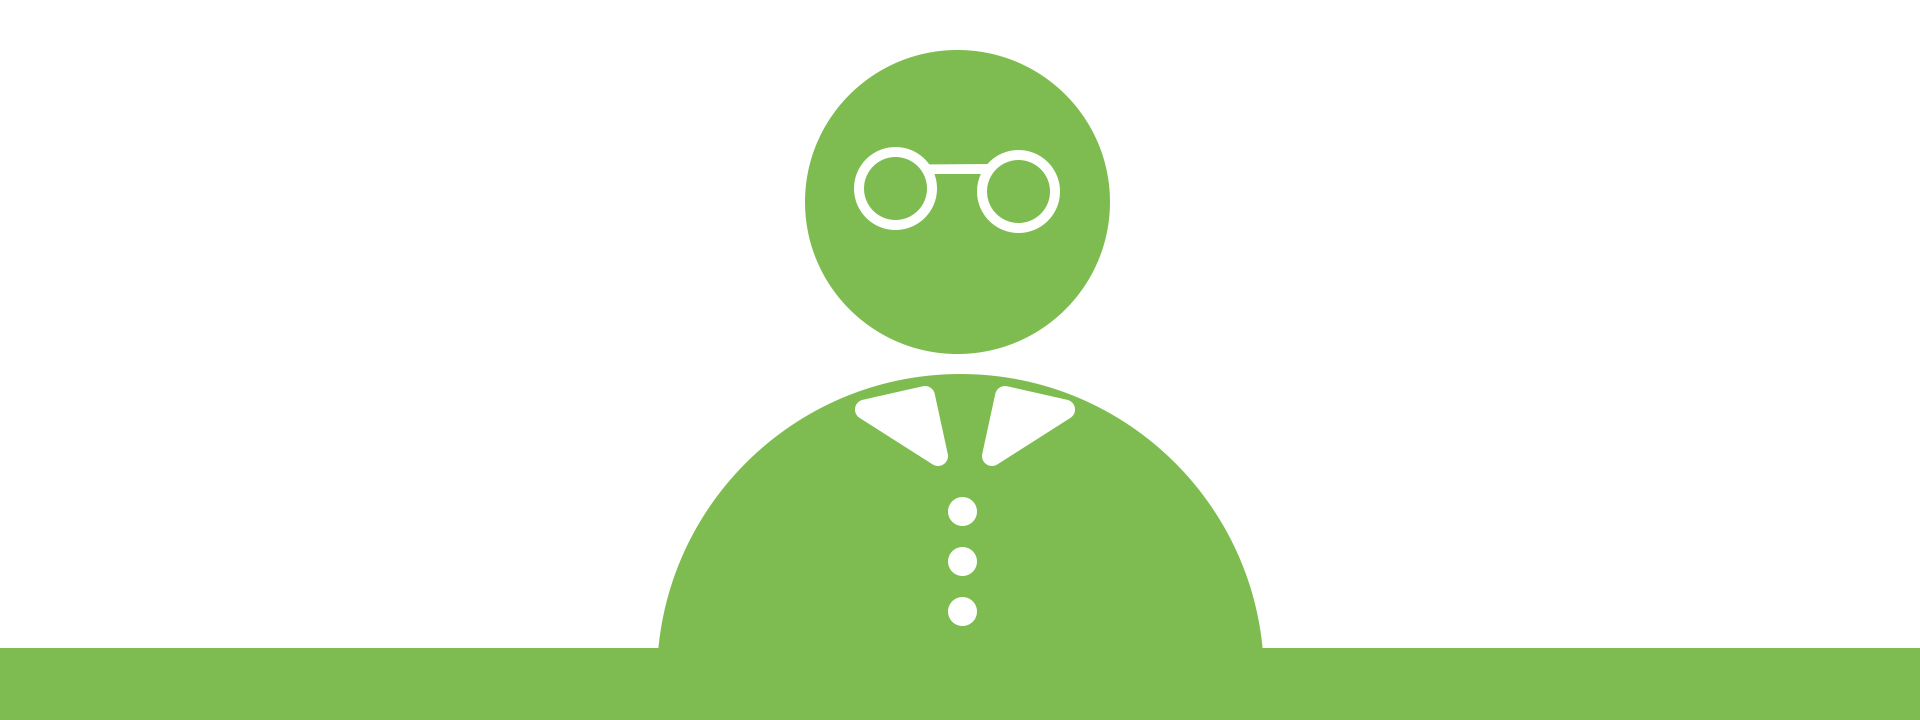 Grafik: eine grüne Figur mit Kragen, Knöpfen und Brille